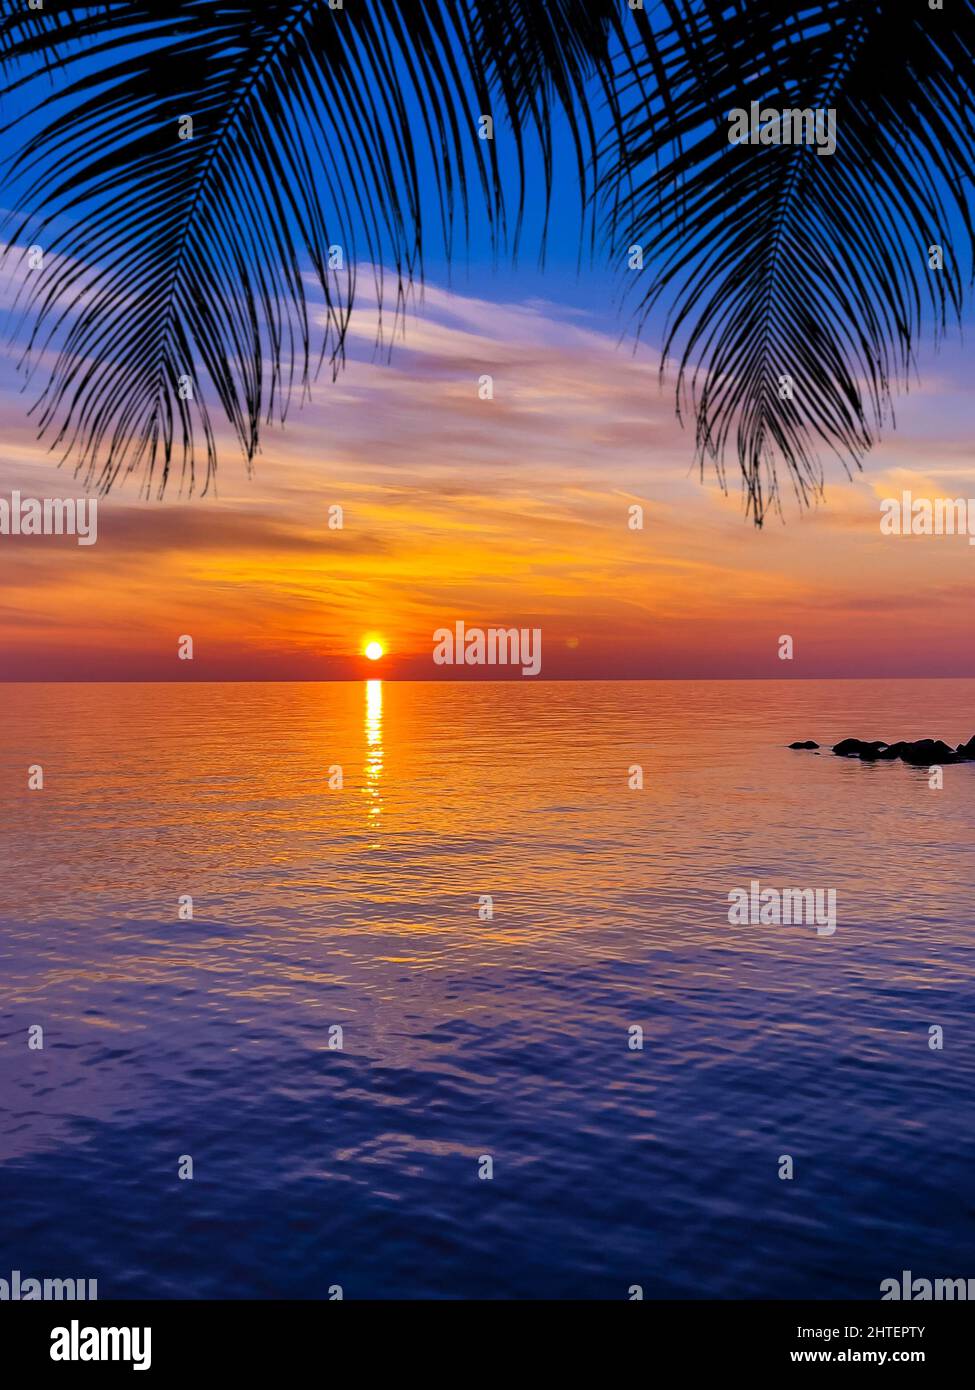 Beau coucher de soleil. Silhouettes de palmiers sombres sur fond de coucher de soleil tropical coloré Banque D'Images